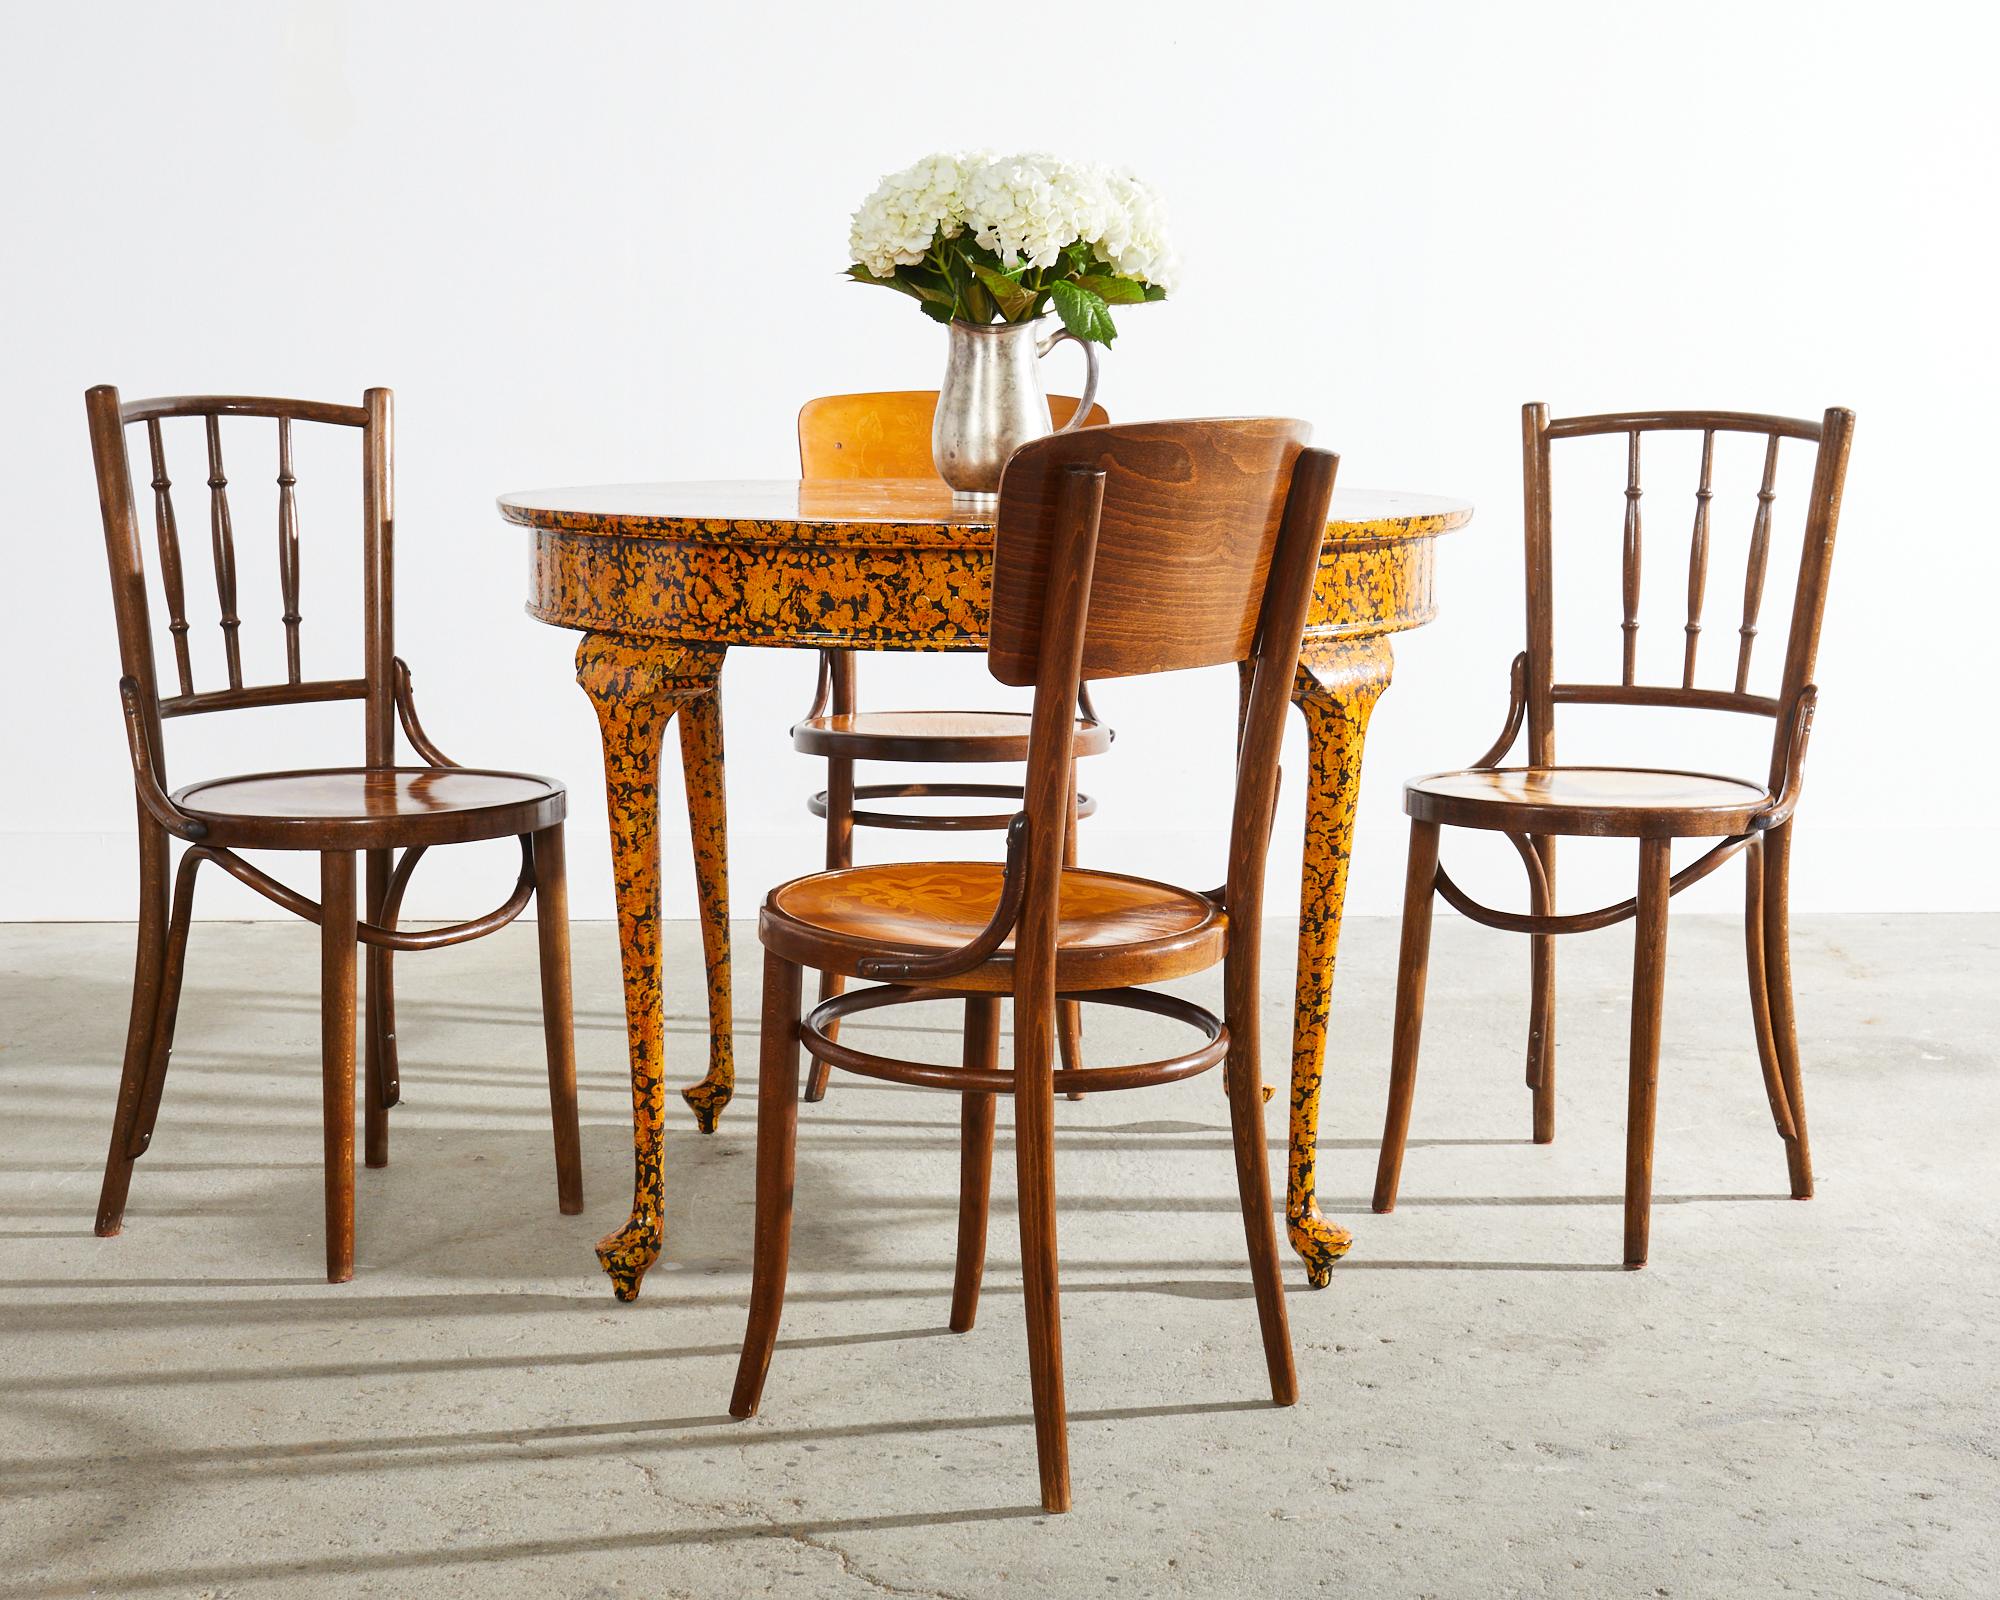 Zusammengestellter Satz von vier Jugendstil-Bugholzstühlen für das Café-Bistro von Mundus für Thonet. Das in der Tschechischen Republik hergestellte Set besteht aus zwei Stühlen mit Spindelrücken und zwei Stühlen mit einem geformten Rücken mit